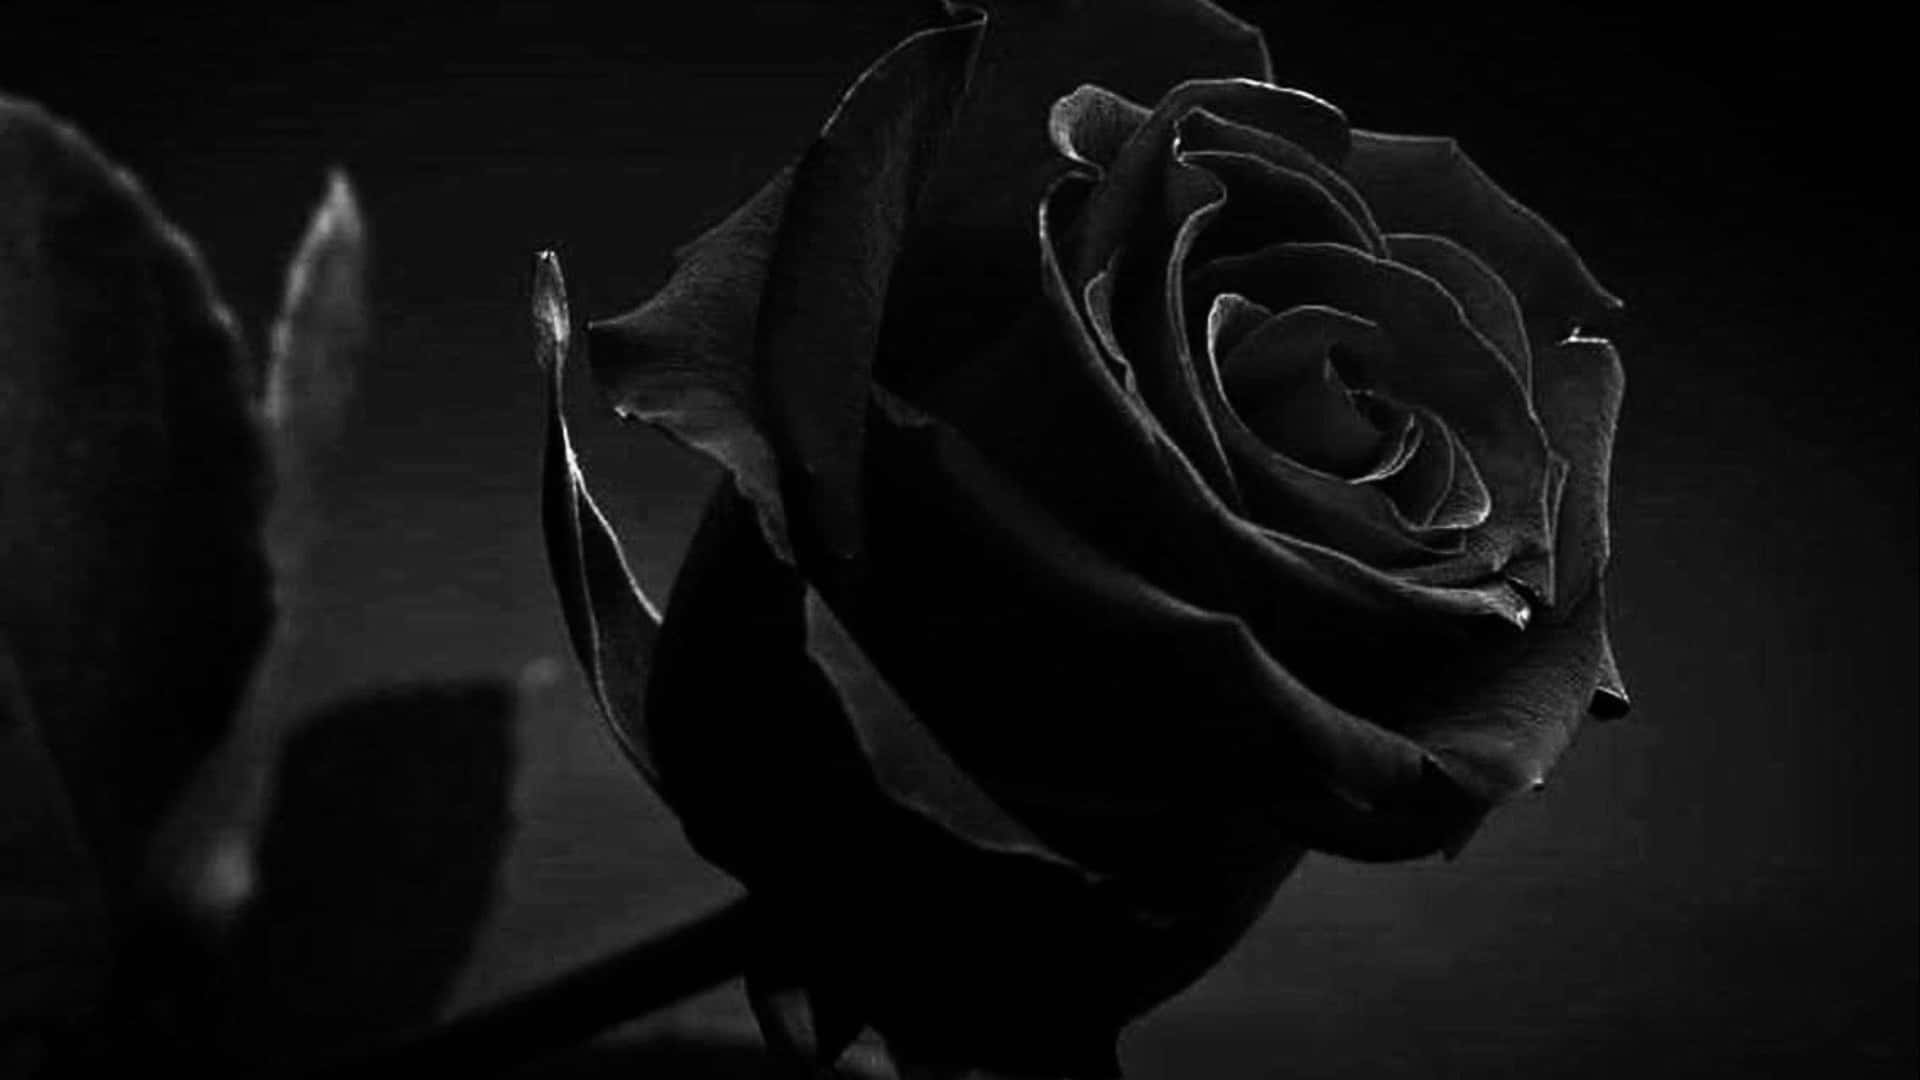 Evocandosentimentos De Paixão E Mistério, Esta Marcante Rosa Negra Simboliza Admiração E Beleza.